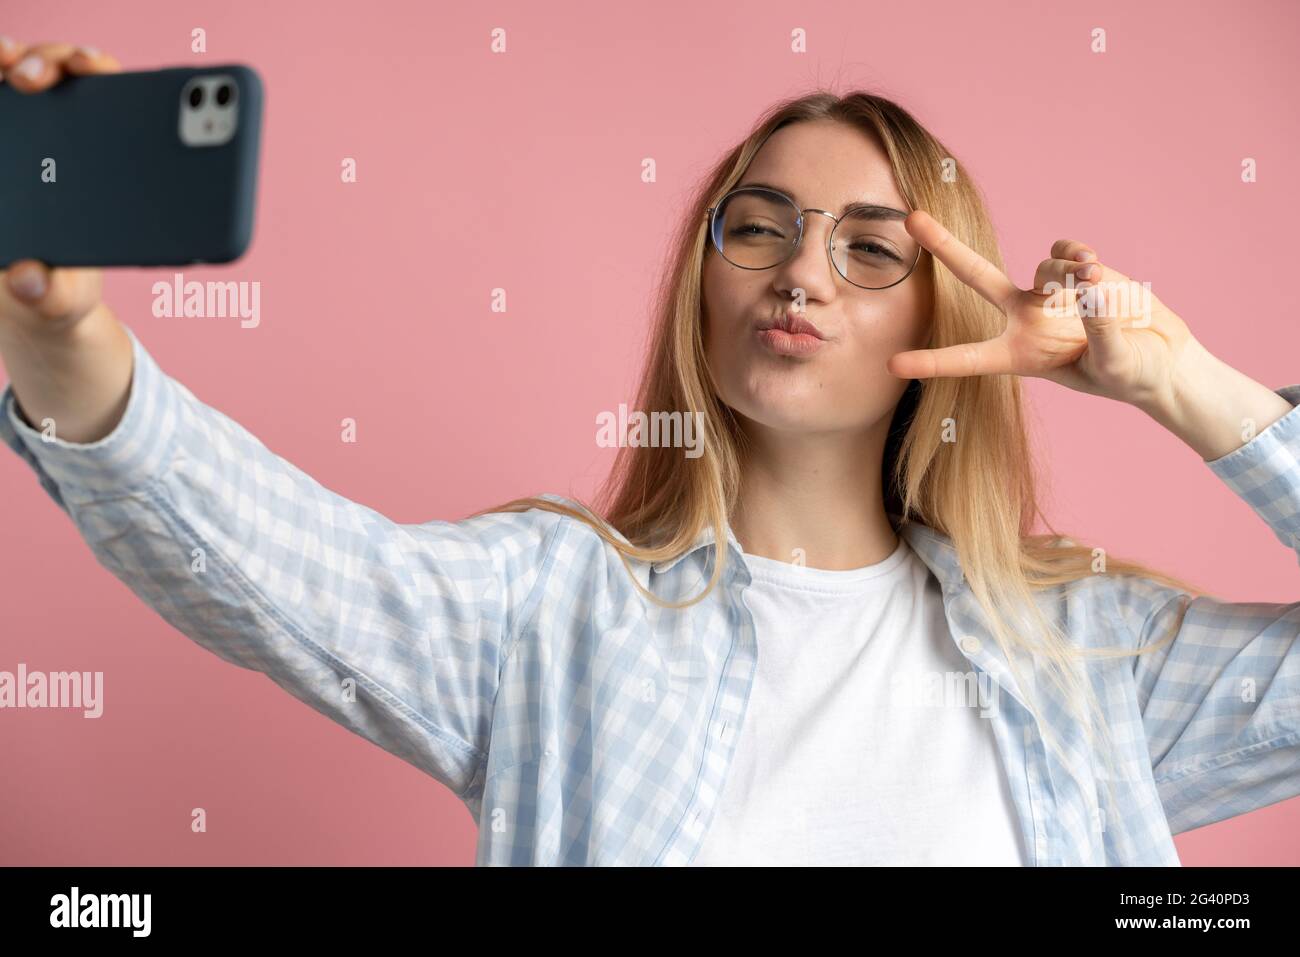 Positive fille avec des verres prend un selfie sur un fond rose. La jeune fille fait un geste de paix autour des yeux et un baiser. Banque D'Images